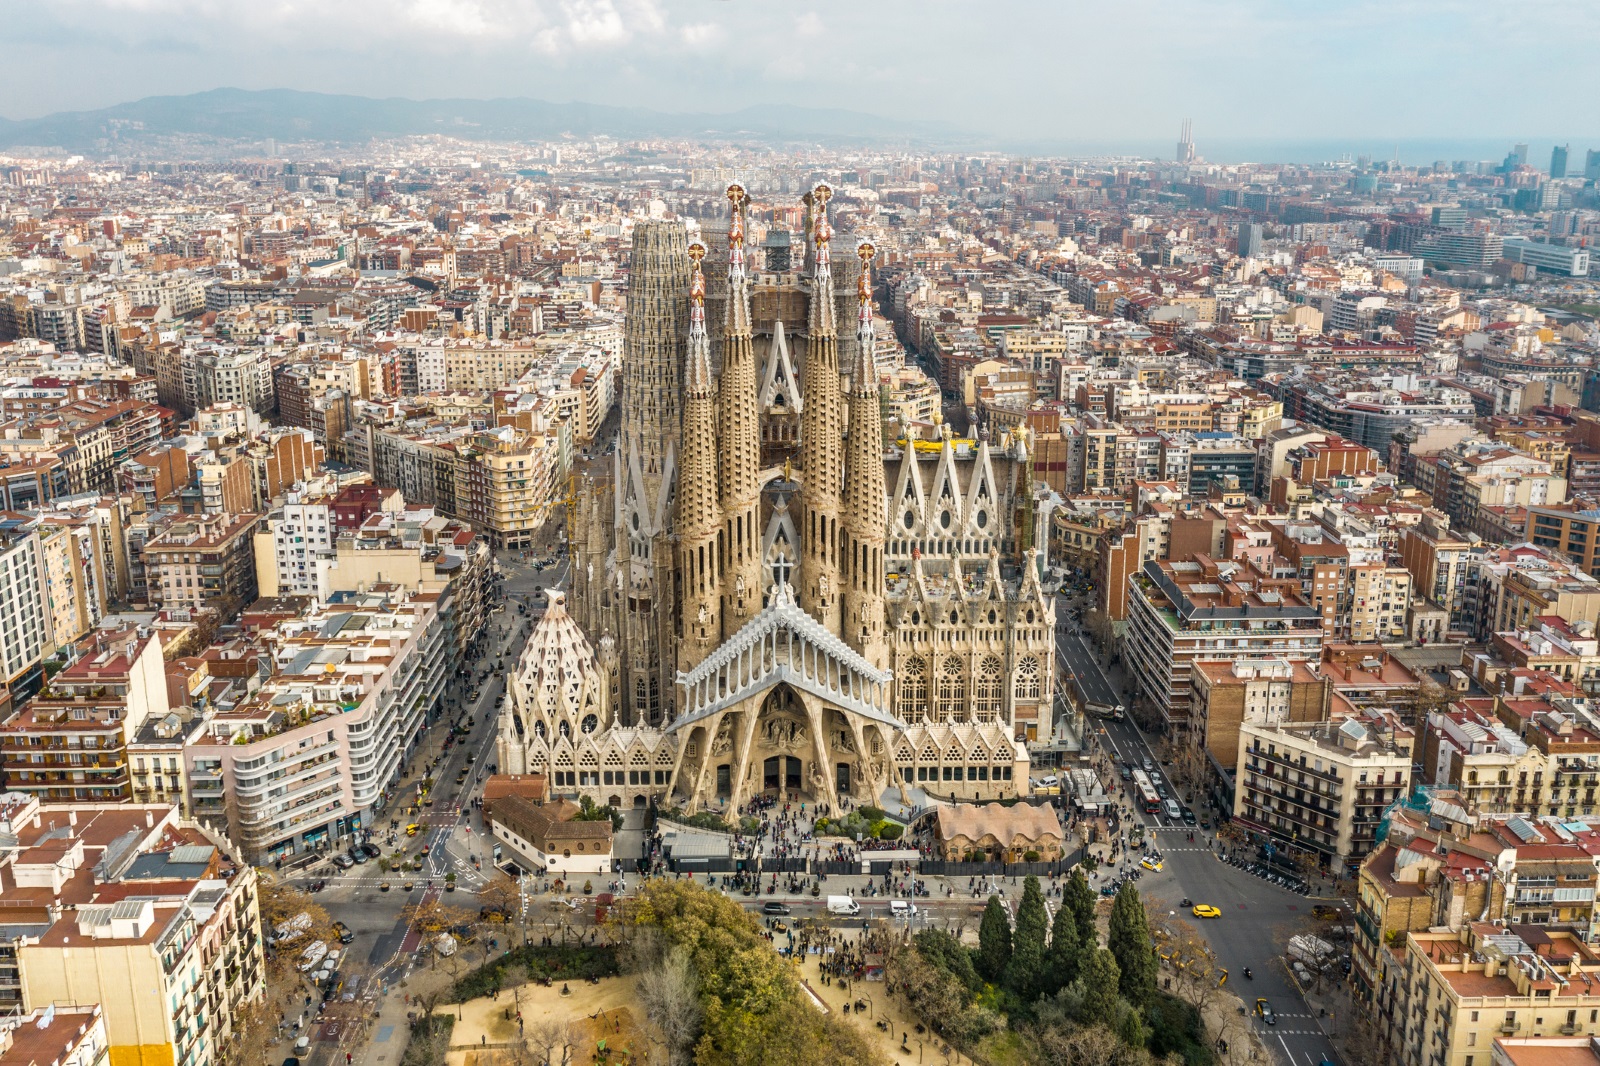 Един от най-известните туристически обекти в Испания е Саграда Фамилия в Барселона. Впечатляващата недовършена църква, която се посещава от повече от четири милиона души годишно, е плод на въображението на испанския архитект Антони Гауди. Любопитен факт е, че 137 години църквата не е довършена, защото няма разрешение за строеж. Документът беше издаден преди броени дни и важи до 2026 г., когато се предполага, че обектът ще бъде довършен.